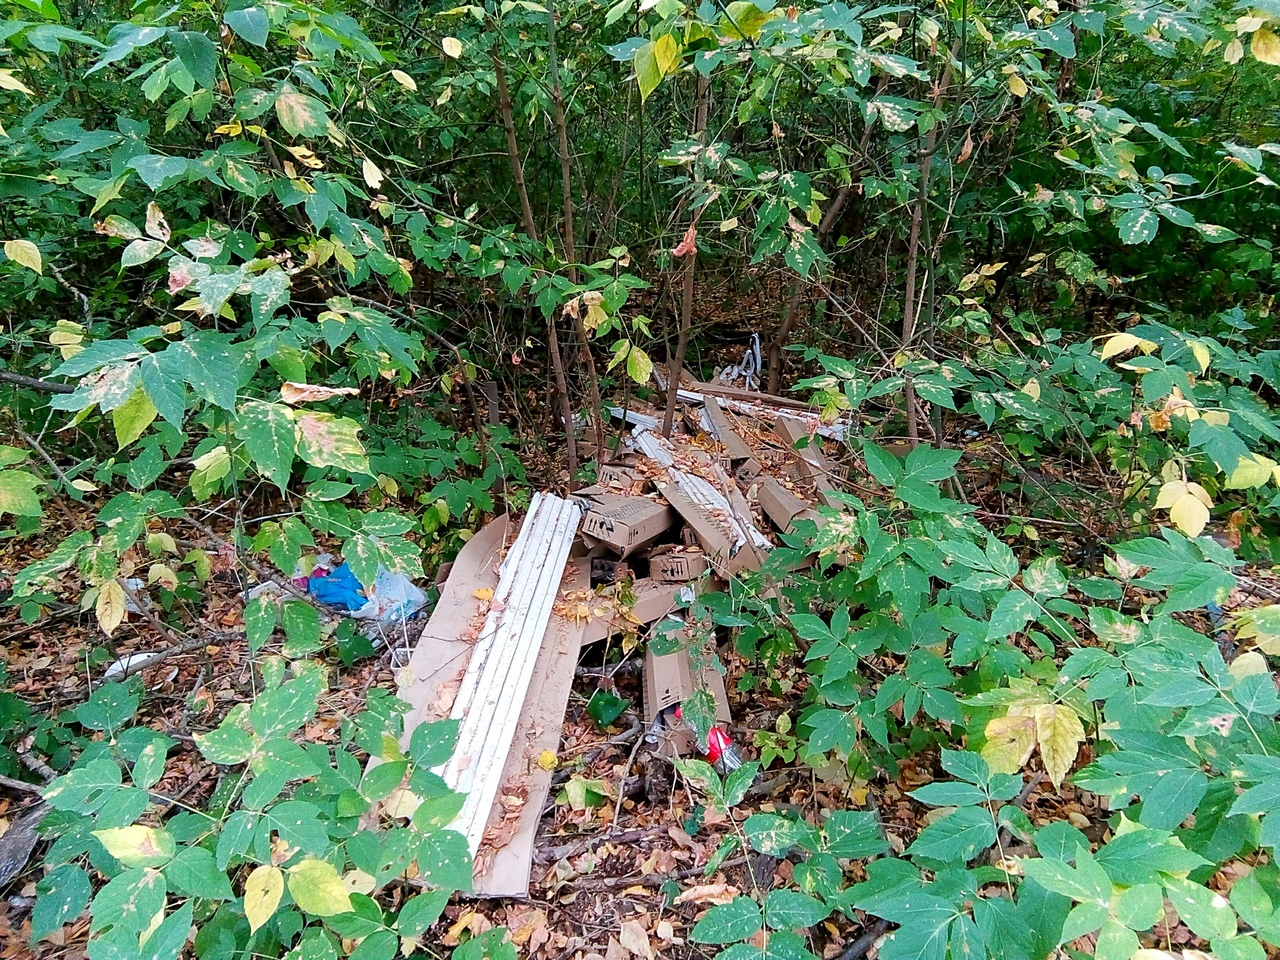 "Земля заражена ртутью": в рязанском лесопарке кто-то выбросил несколько упаковок с ртутными лампами